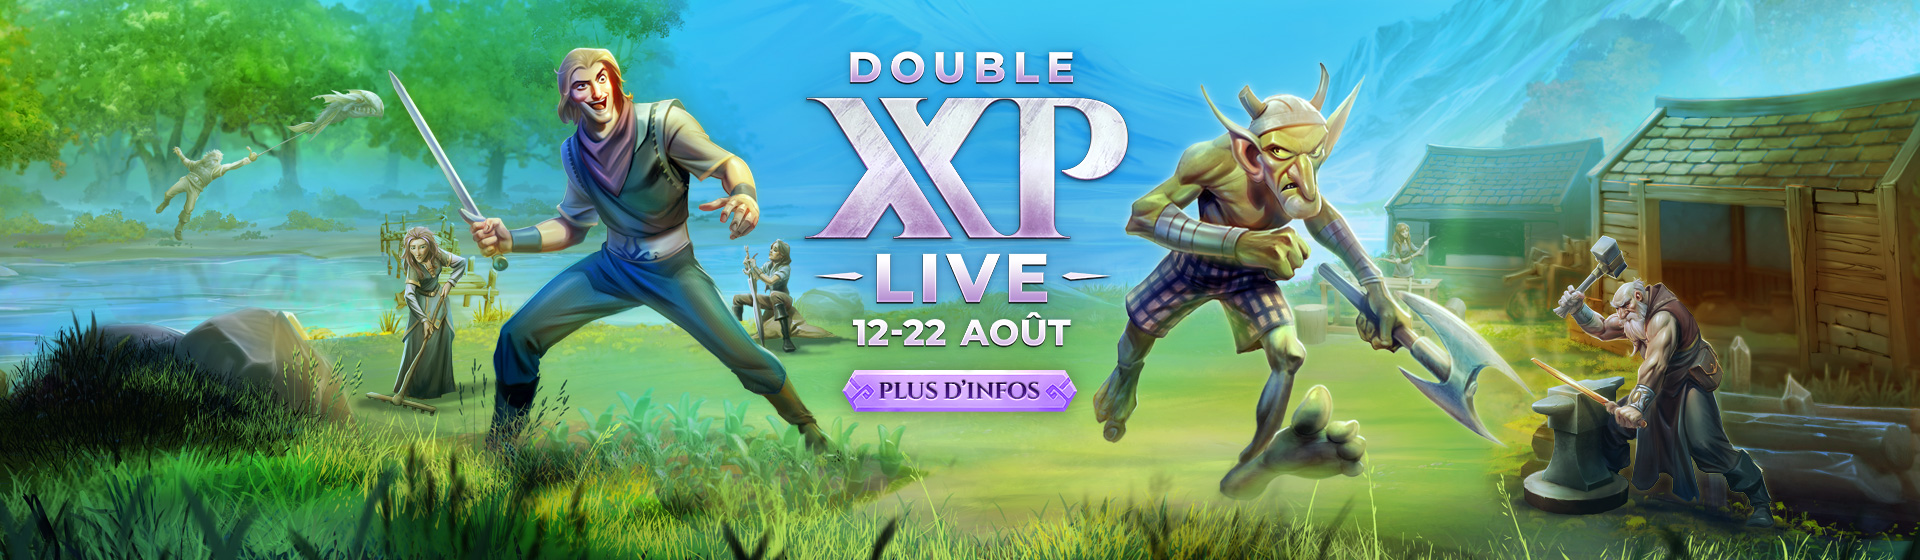 Double XP LIVE